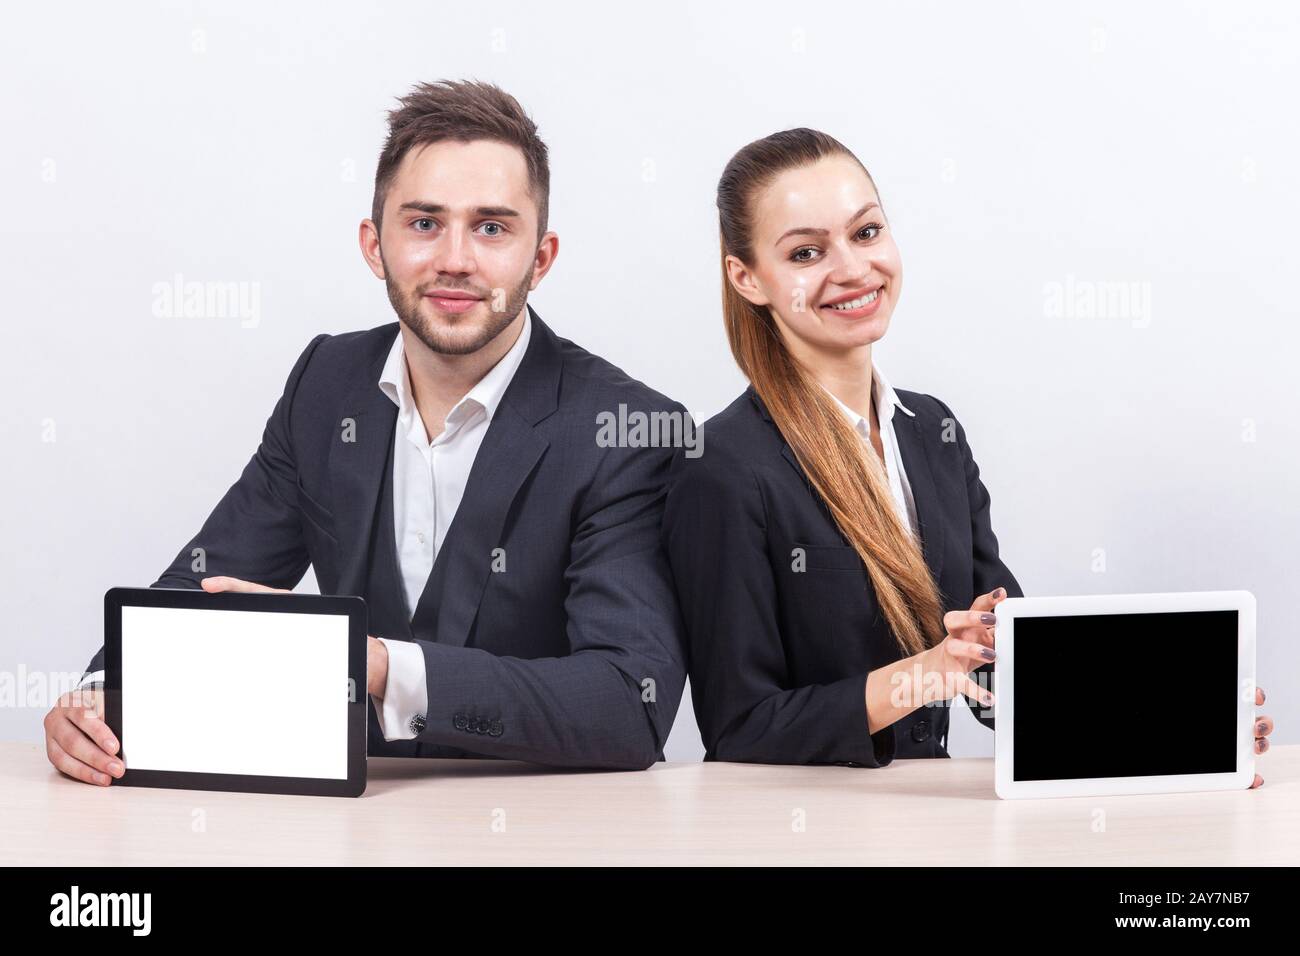 Bild von zwei Büroangestellten, die beide ein Tablet halten Stockfoto